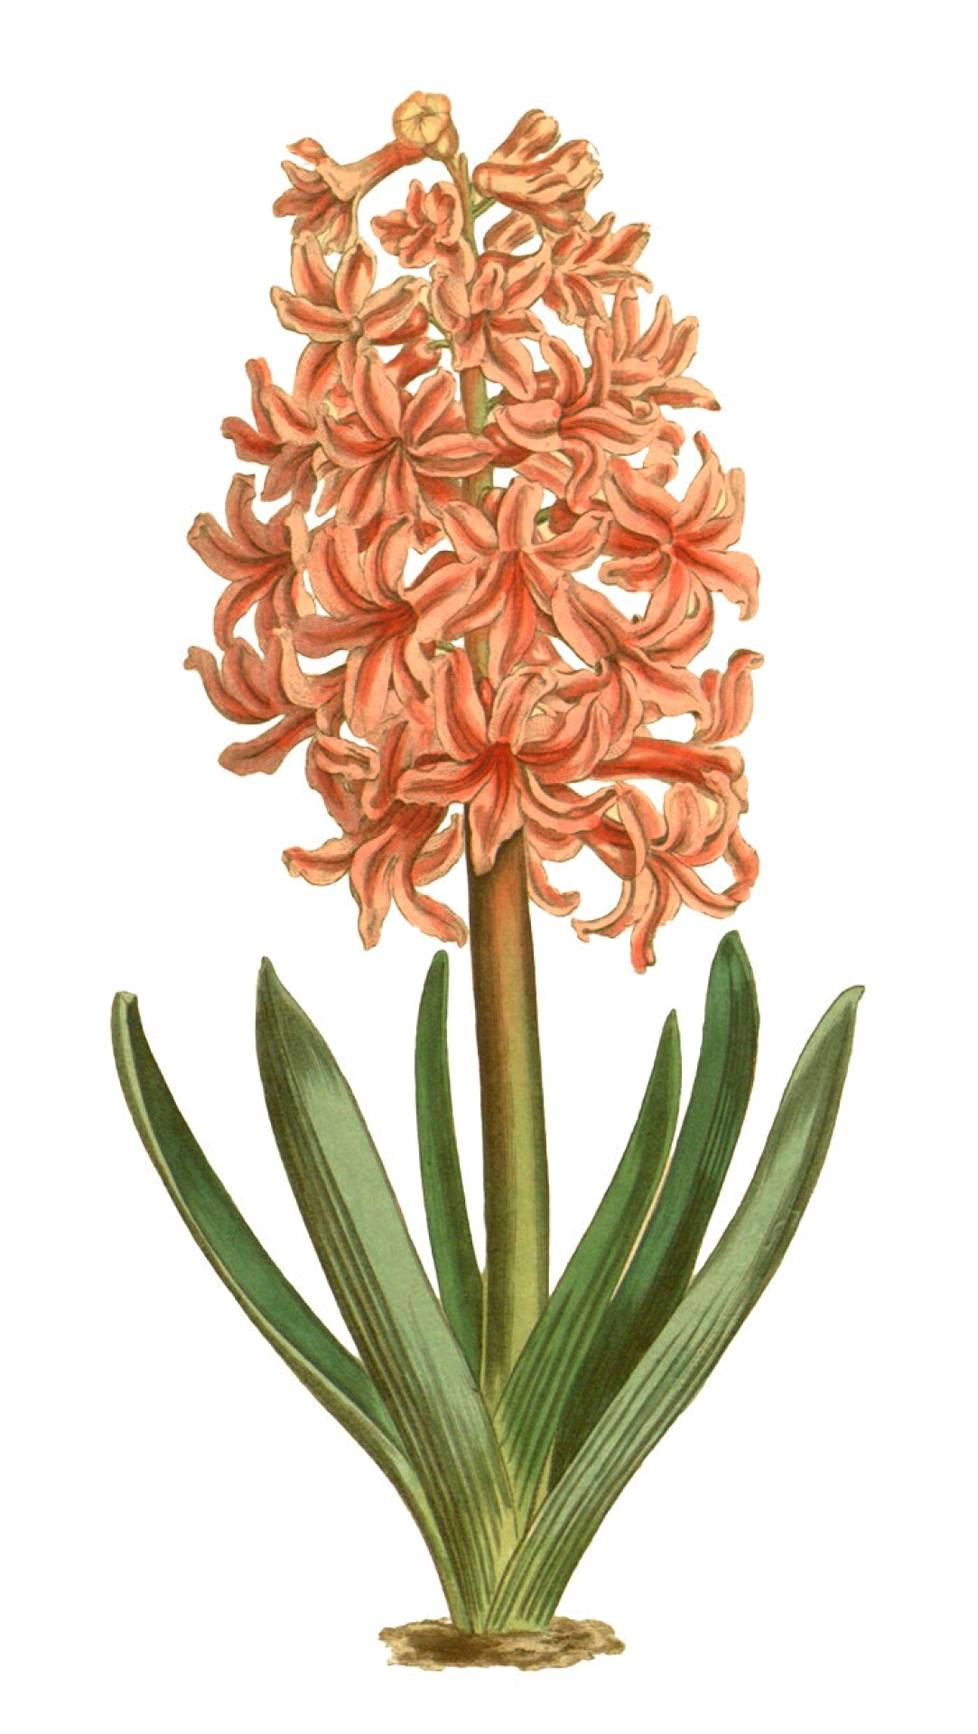 Ranskassa hyasintista (Hyacinthus orientalis) innostuttiin tekemään hajuvesiä jo 1600-luvulla.